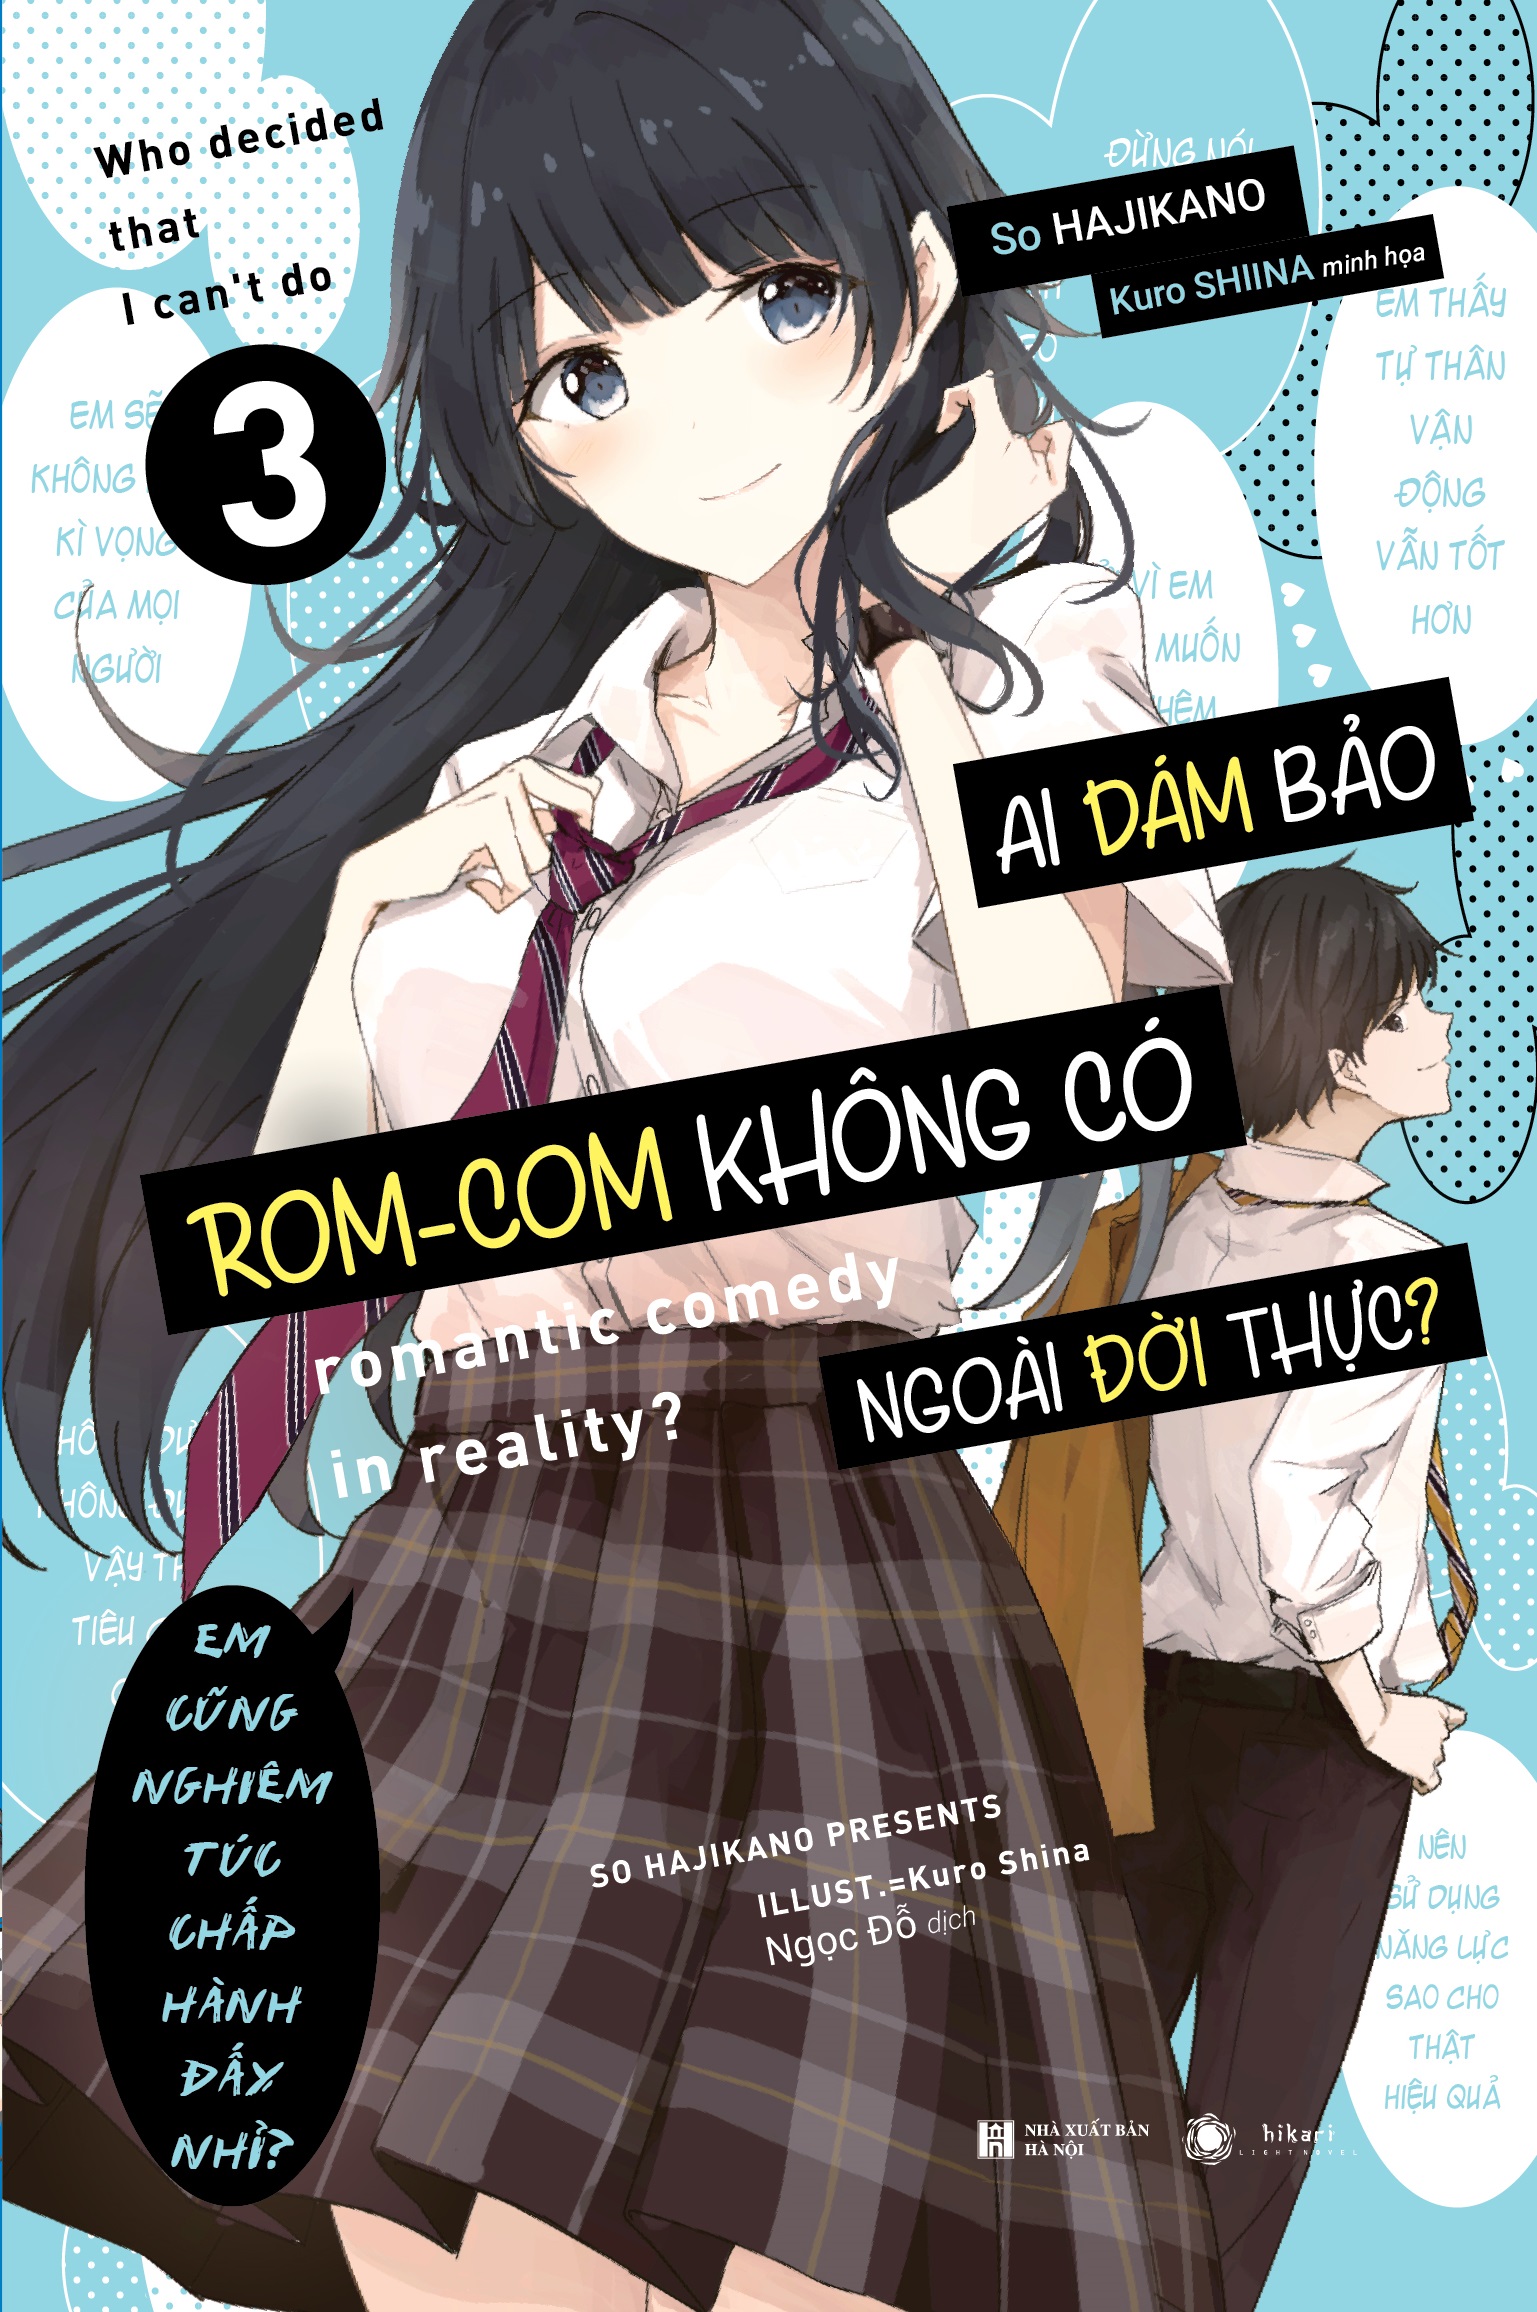 Light Novel Ai dám bảo rom-com không có ngoài đời thực? - Tập 3 - Bản phổ thông và đặc biệt tặng Poster - Hikari